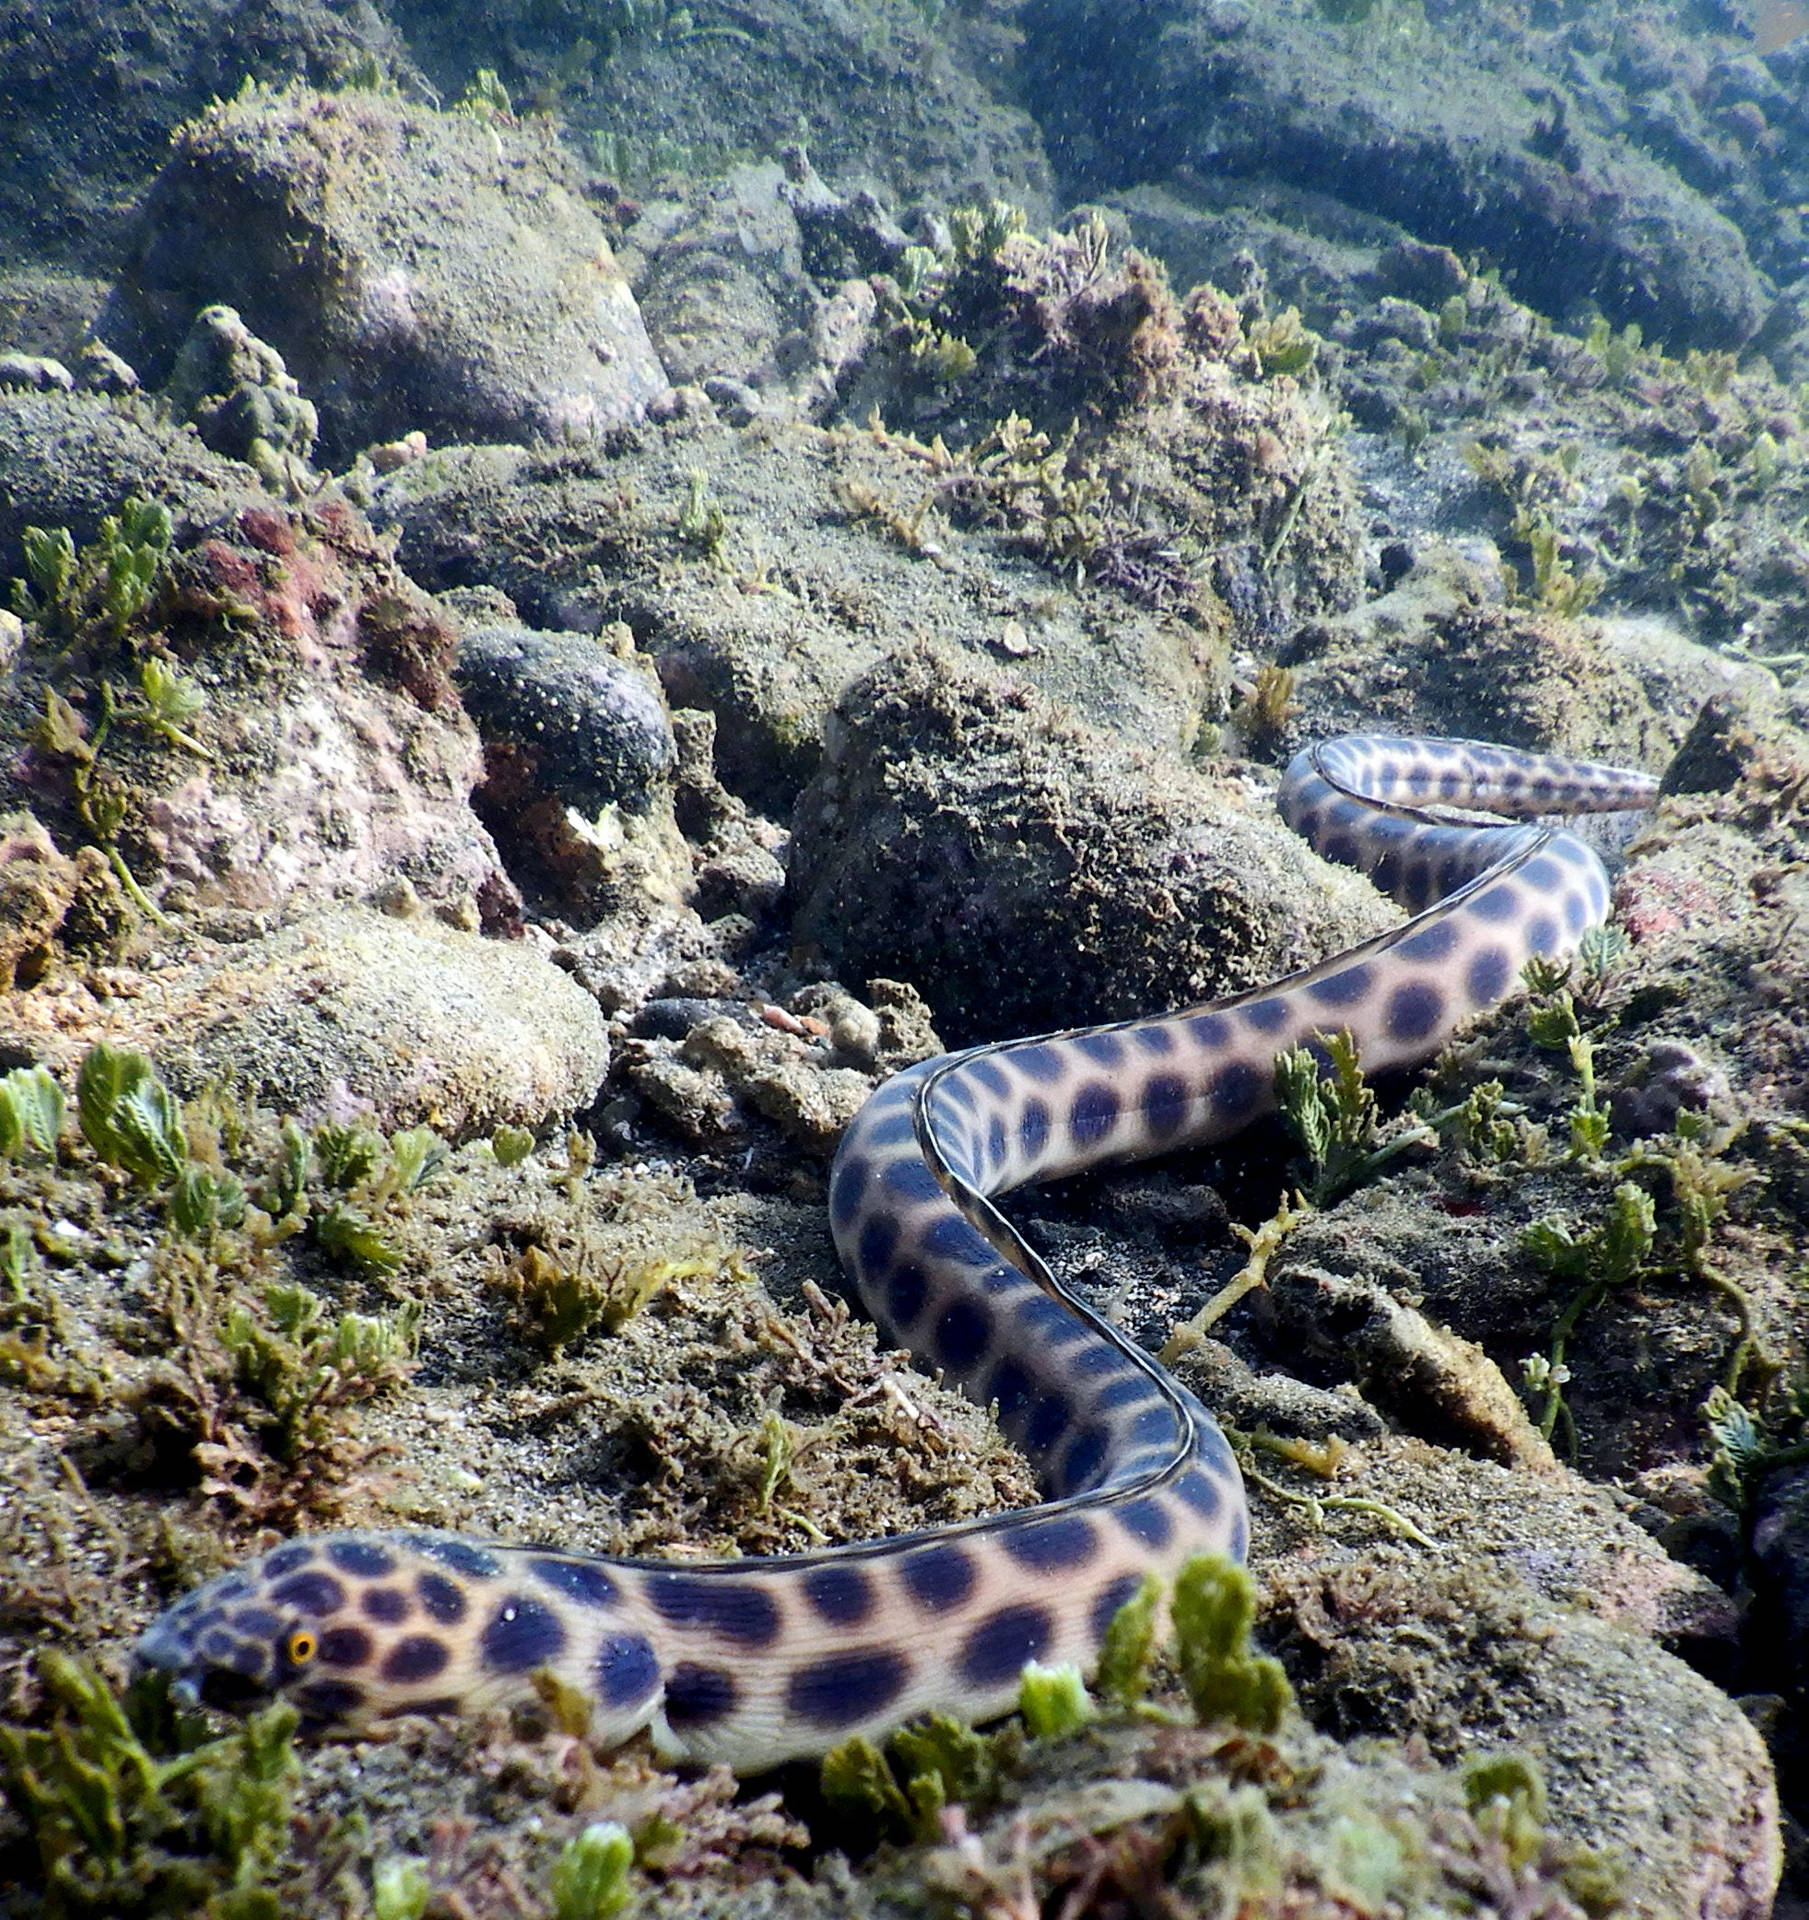 Tigreserpente Anguilla Pesce Che Si Arrampica Sui Reef Sfondo